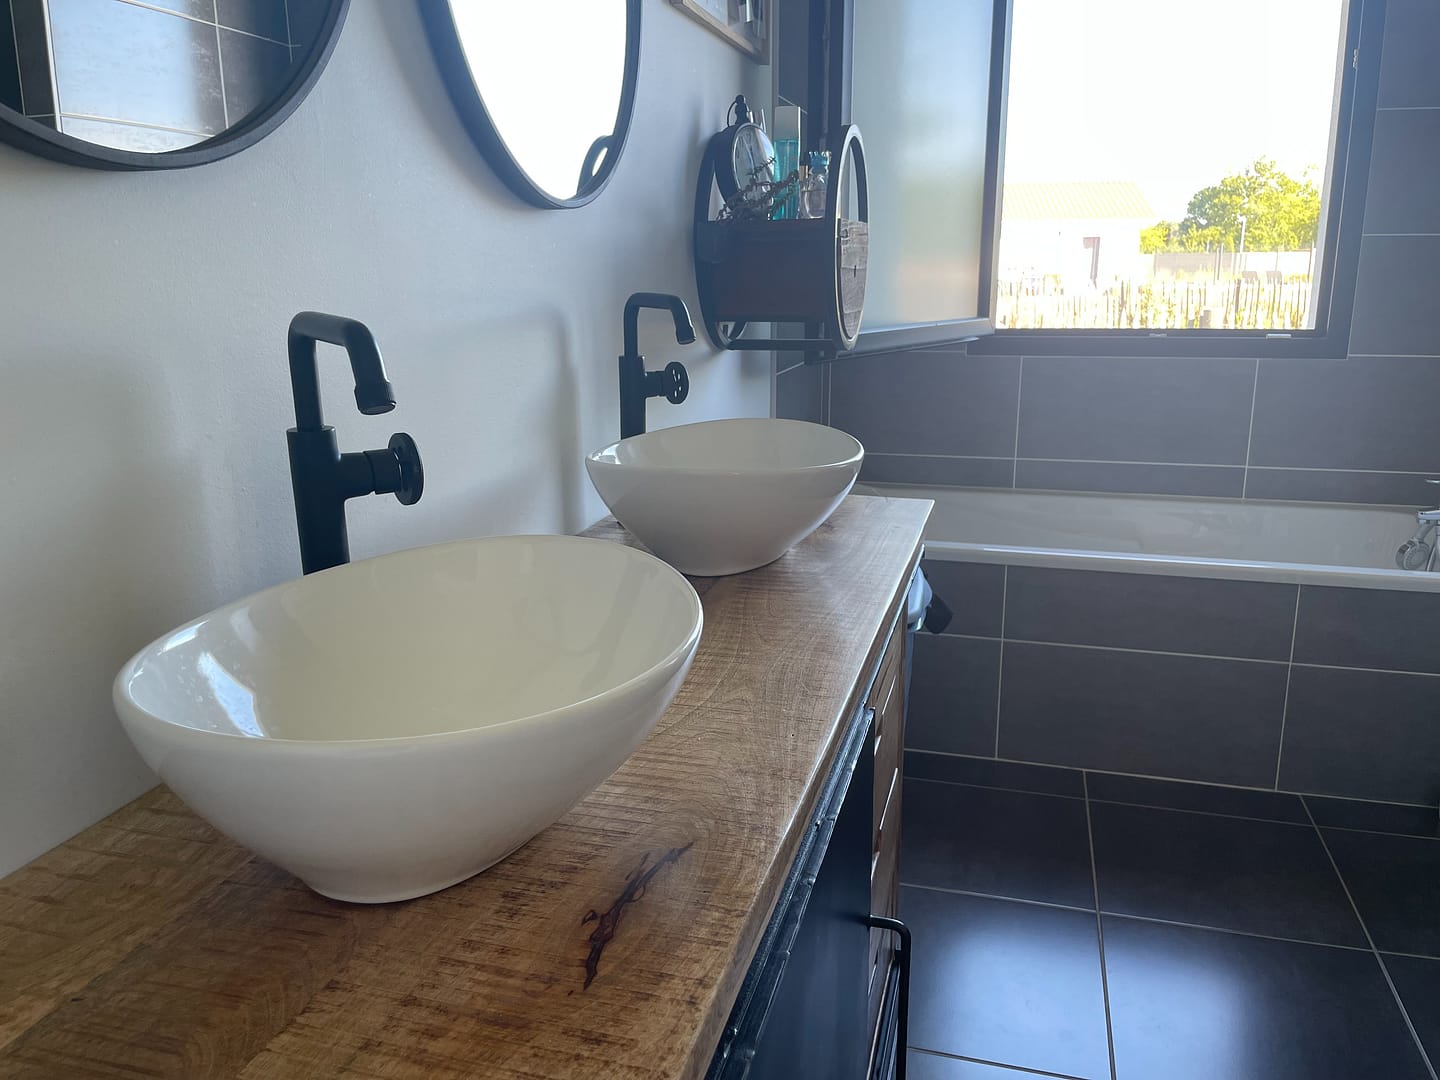 Salle de bain moderne avec vasques design et robinets noirs